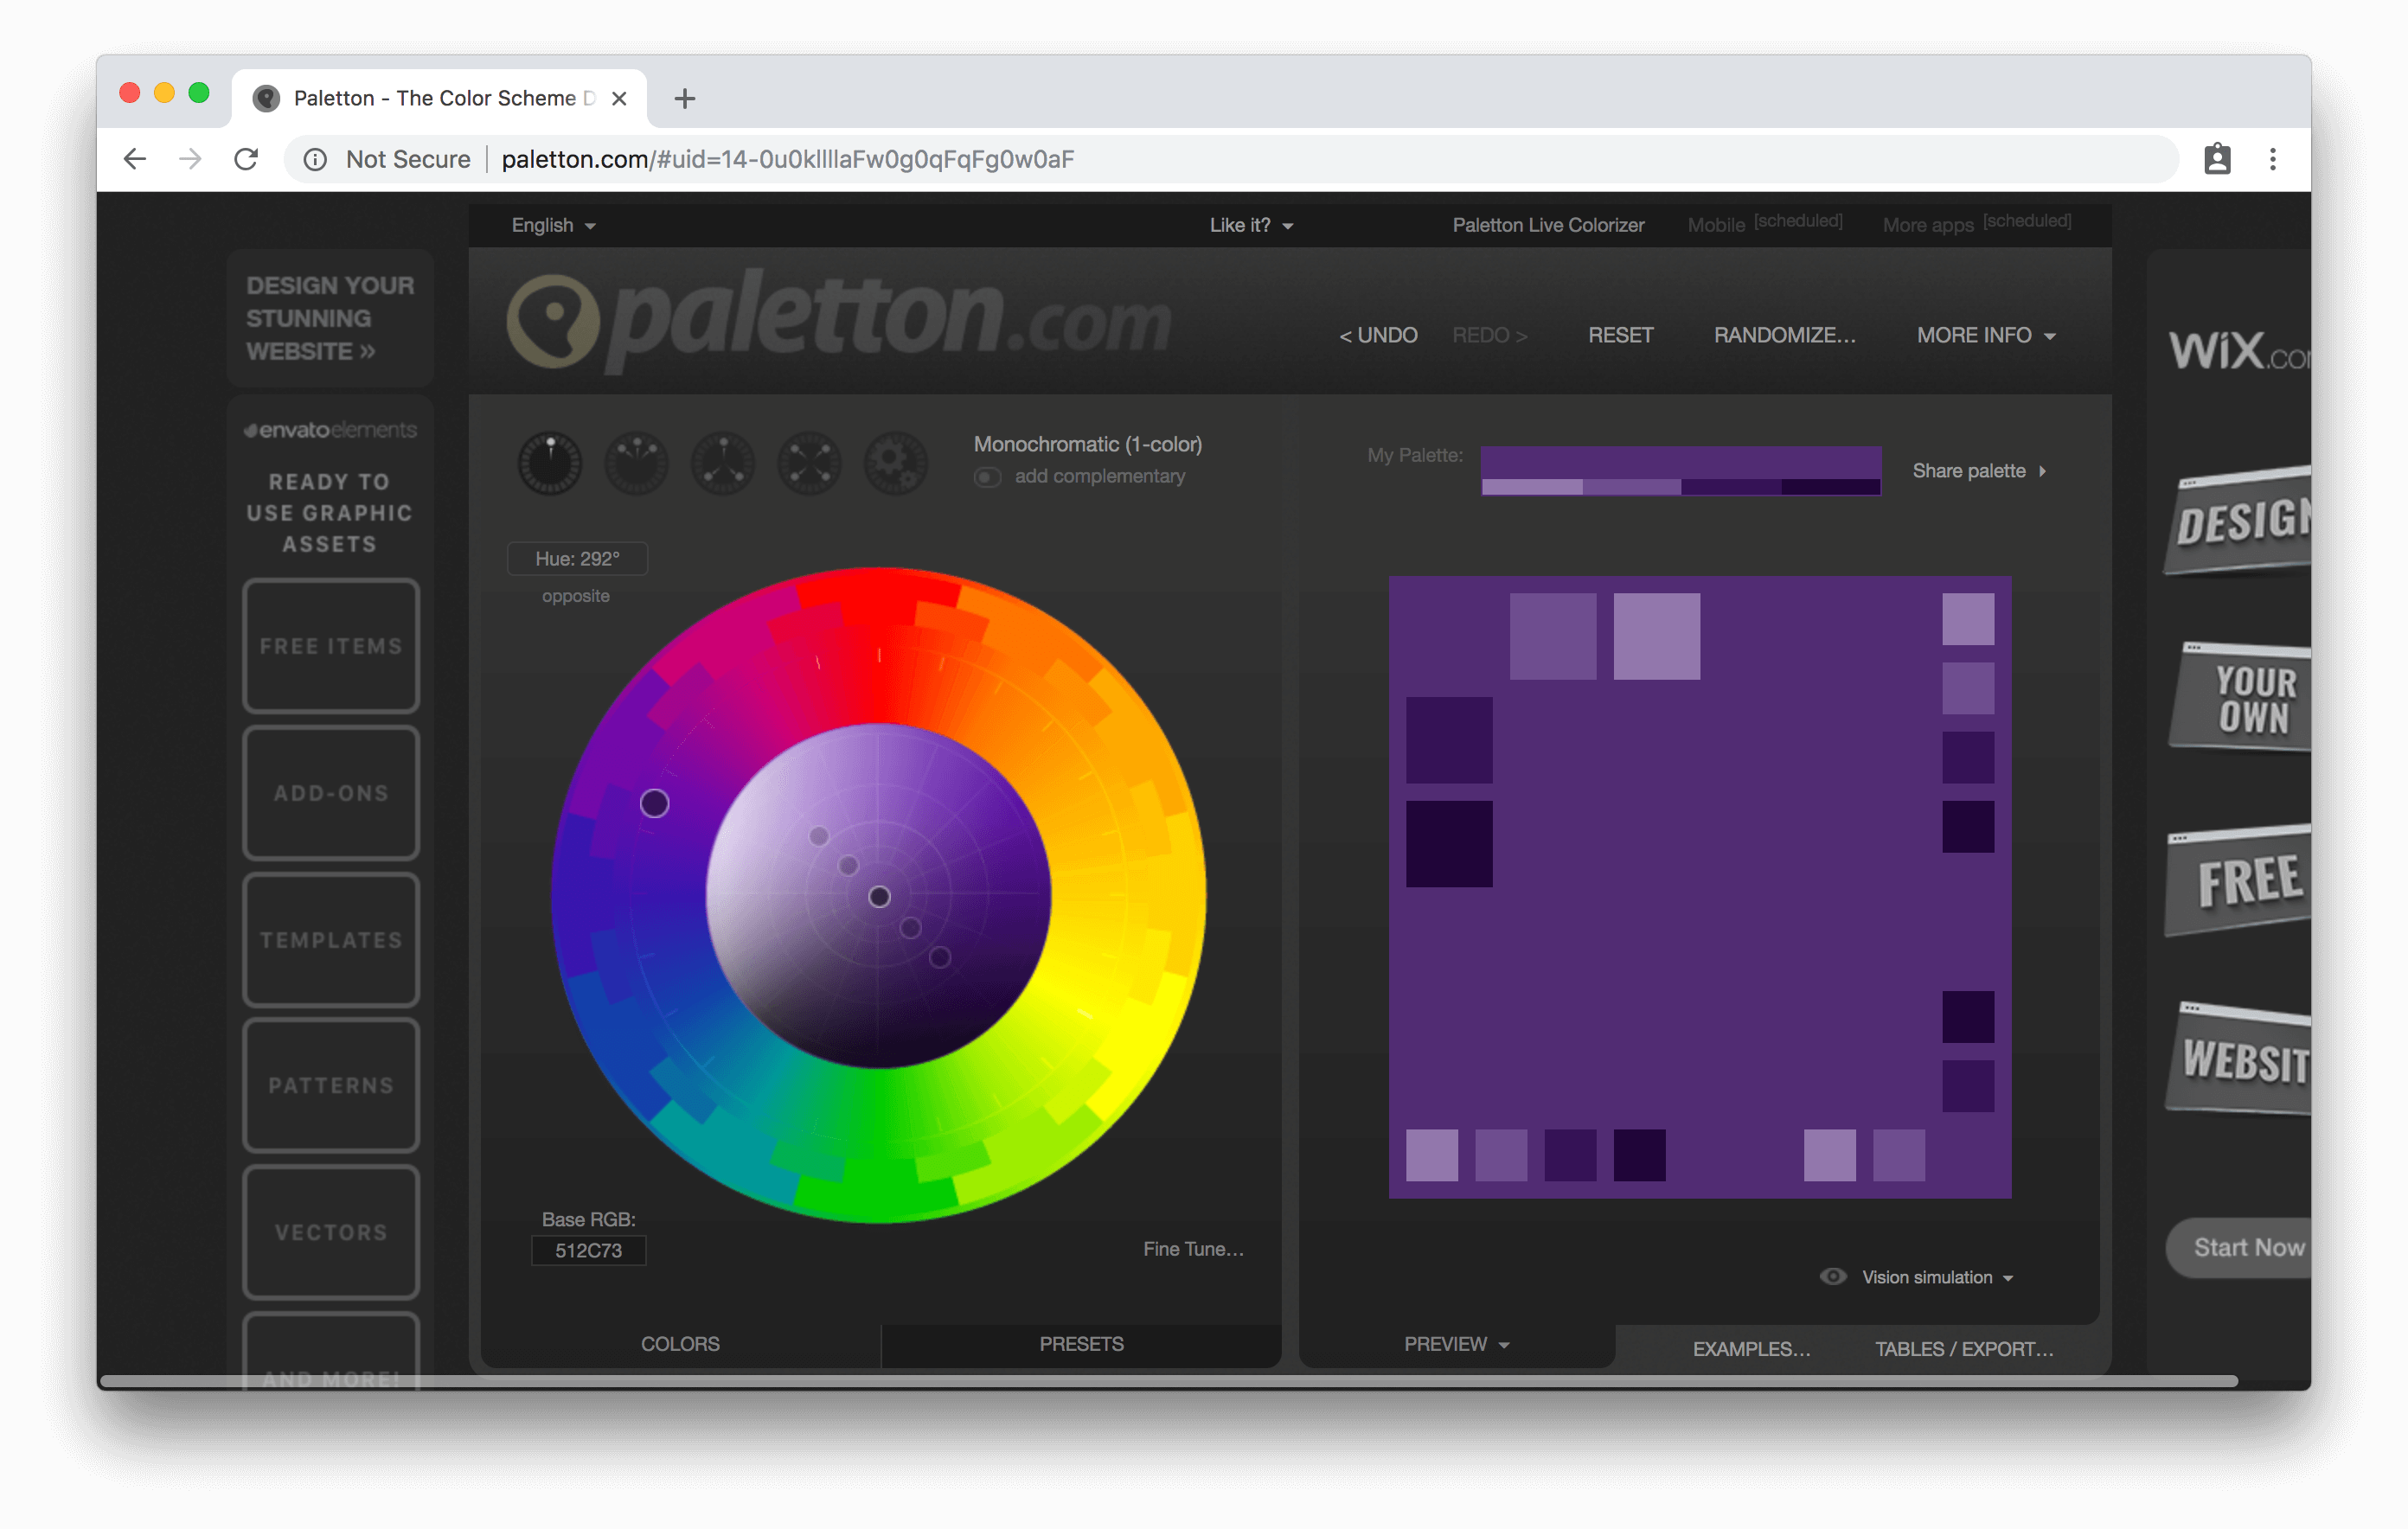 paletton.com